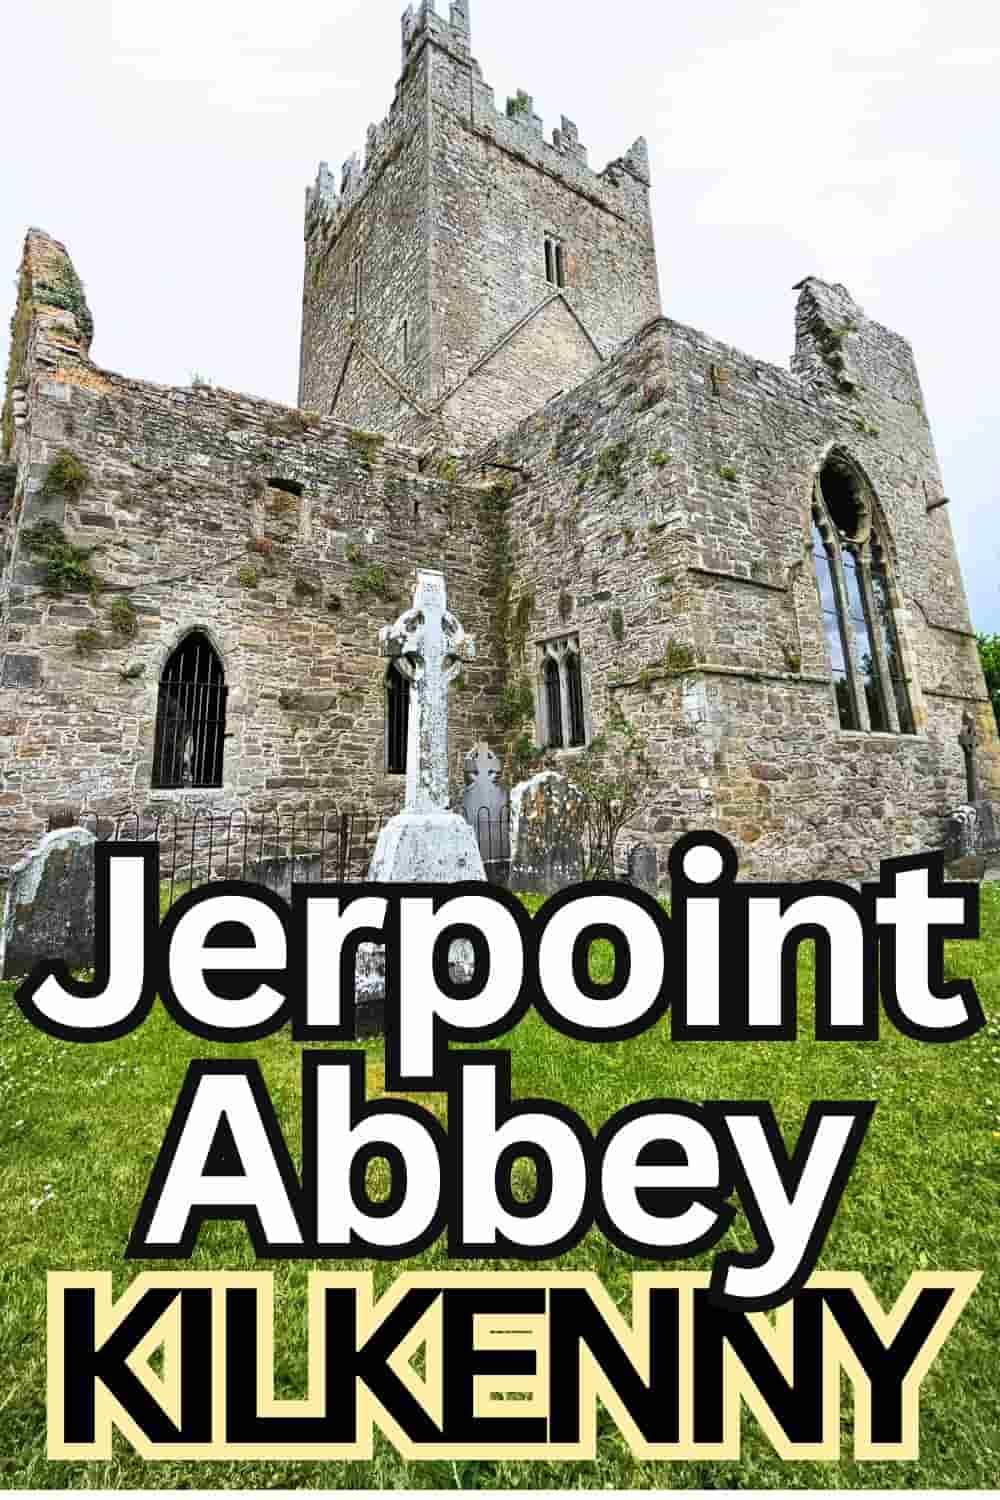 Jerpoint Abbey in Kilkenny